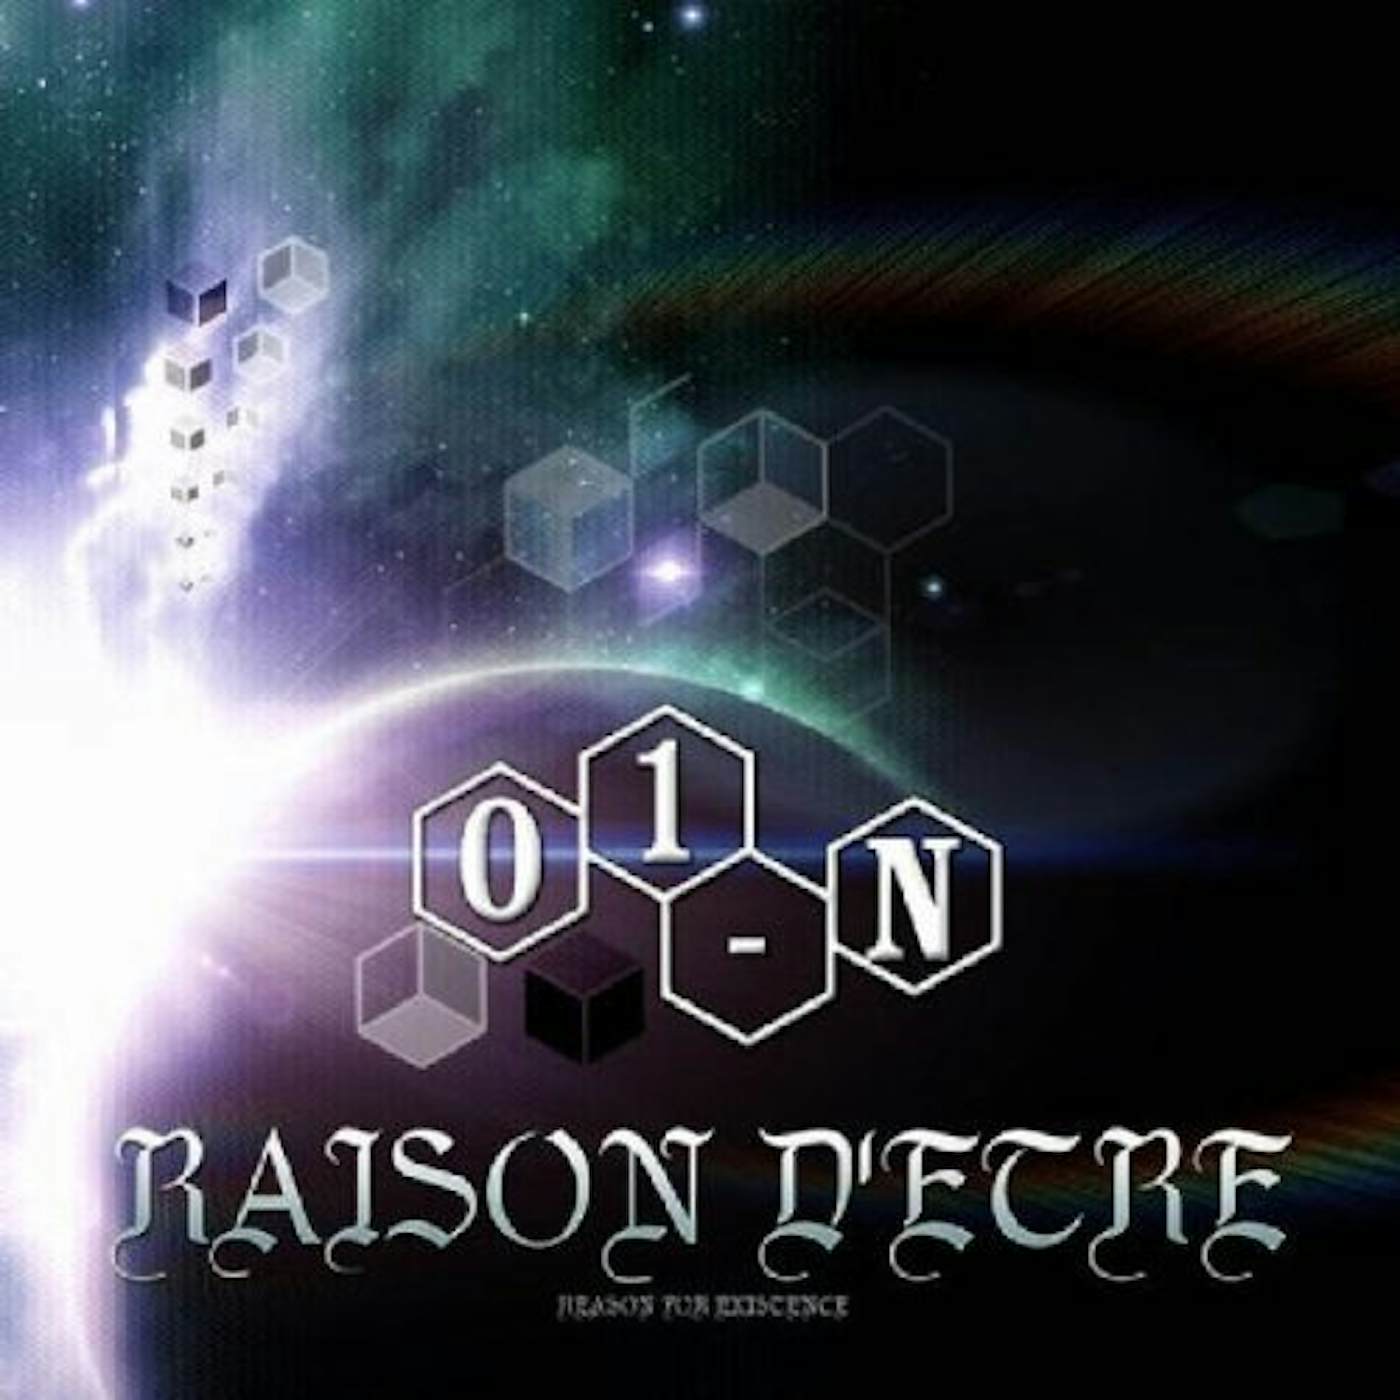 01-N RAISON D'ETRE CD